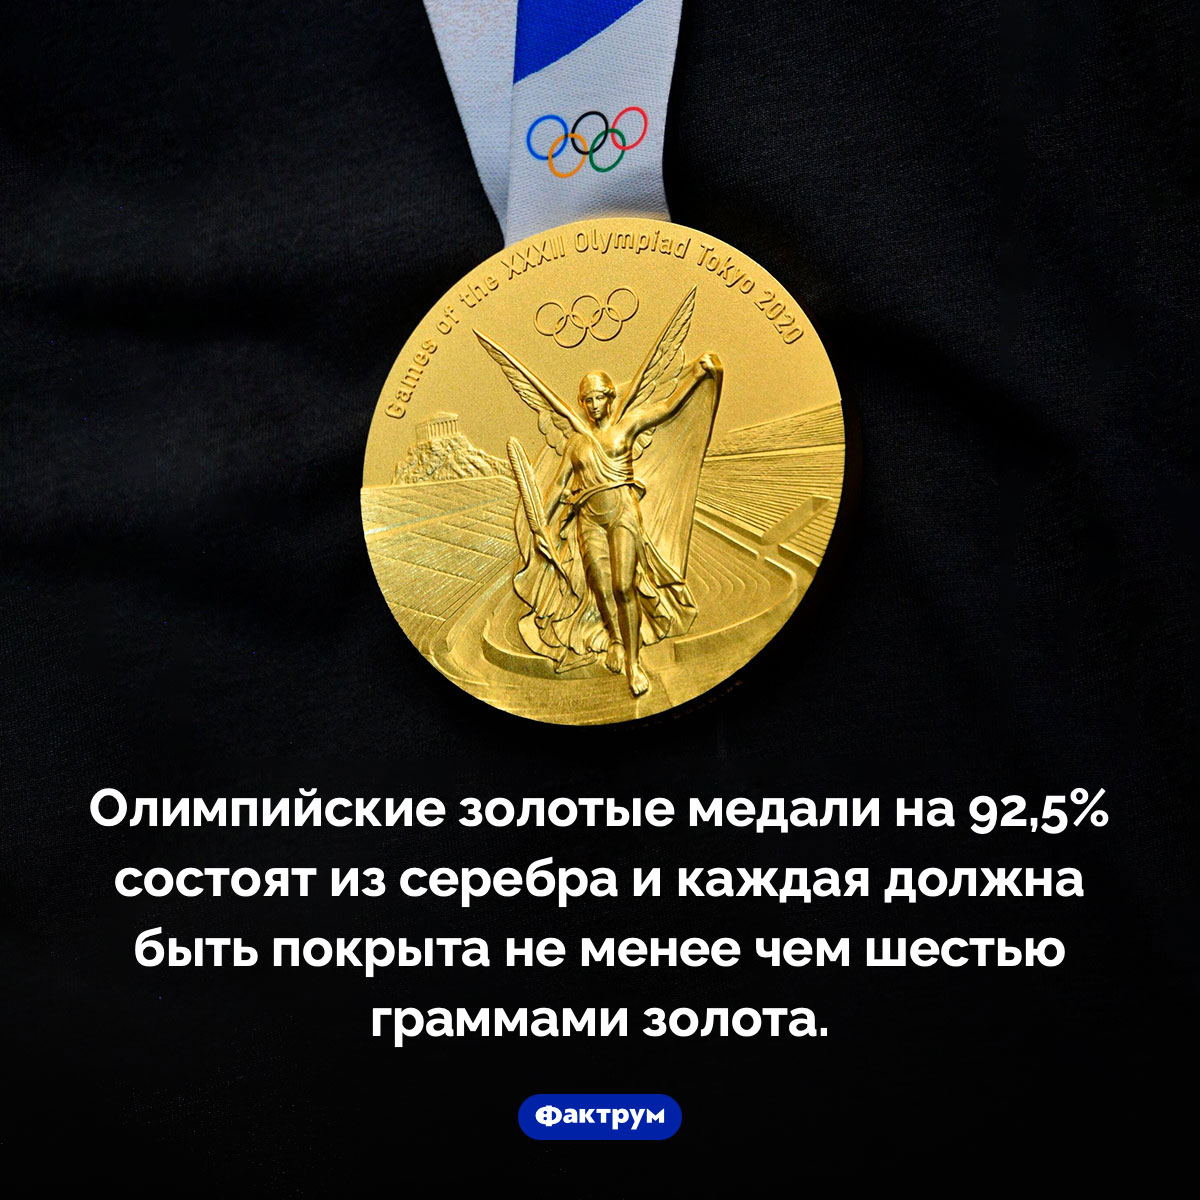 Из чего сделаны олимпийские медали. Олимпийские золотые медали на 92,5% состоят из серебра и каждая должна быть покрыта не менее чем шестью граммами золота.